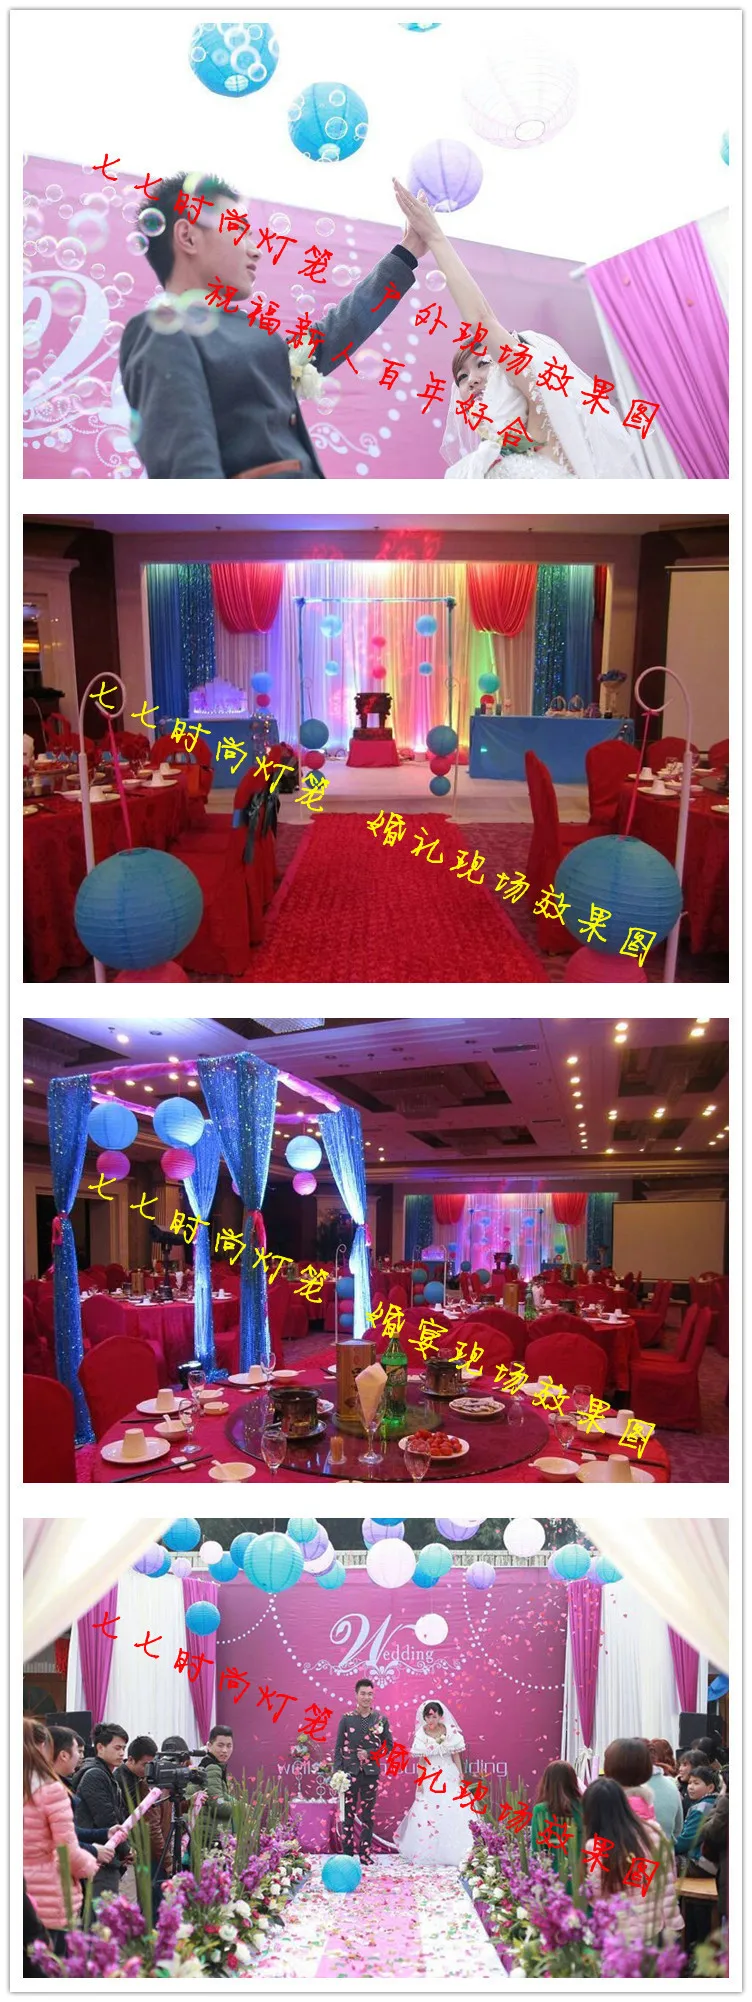 4 дюйма 10 см Круглый Китайский бумажный фонарь на день рождения Свадебный декор подарок ремесло DIY whcn